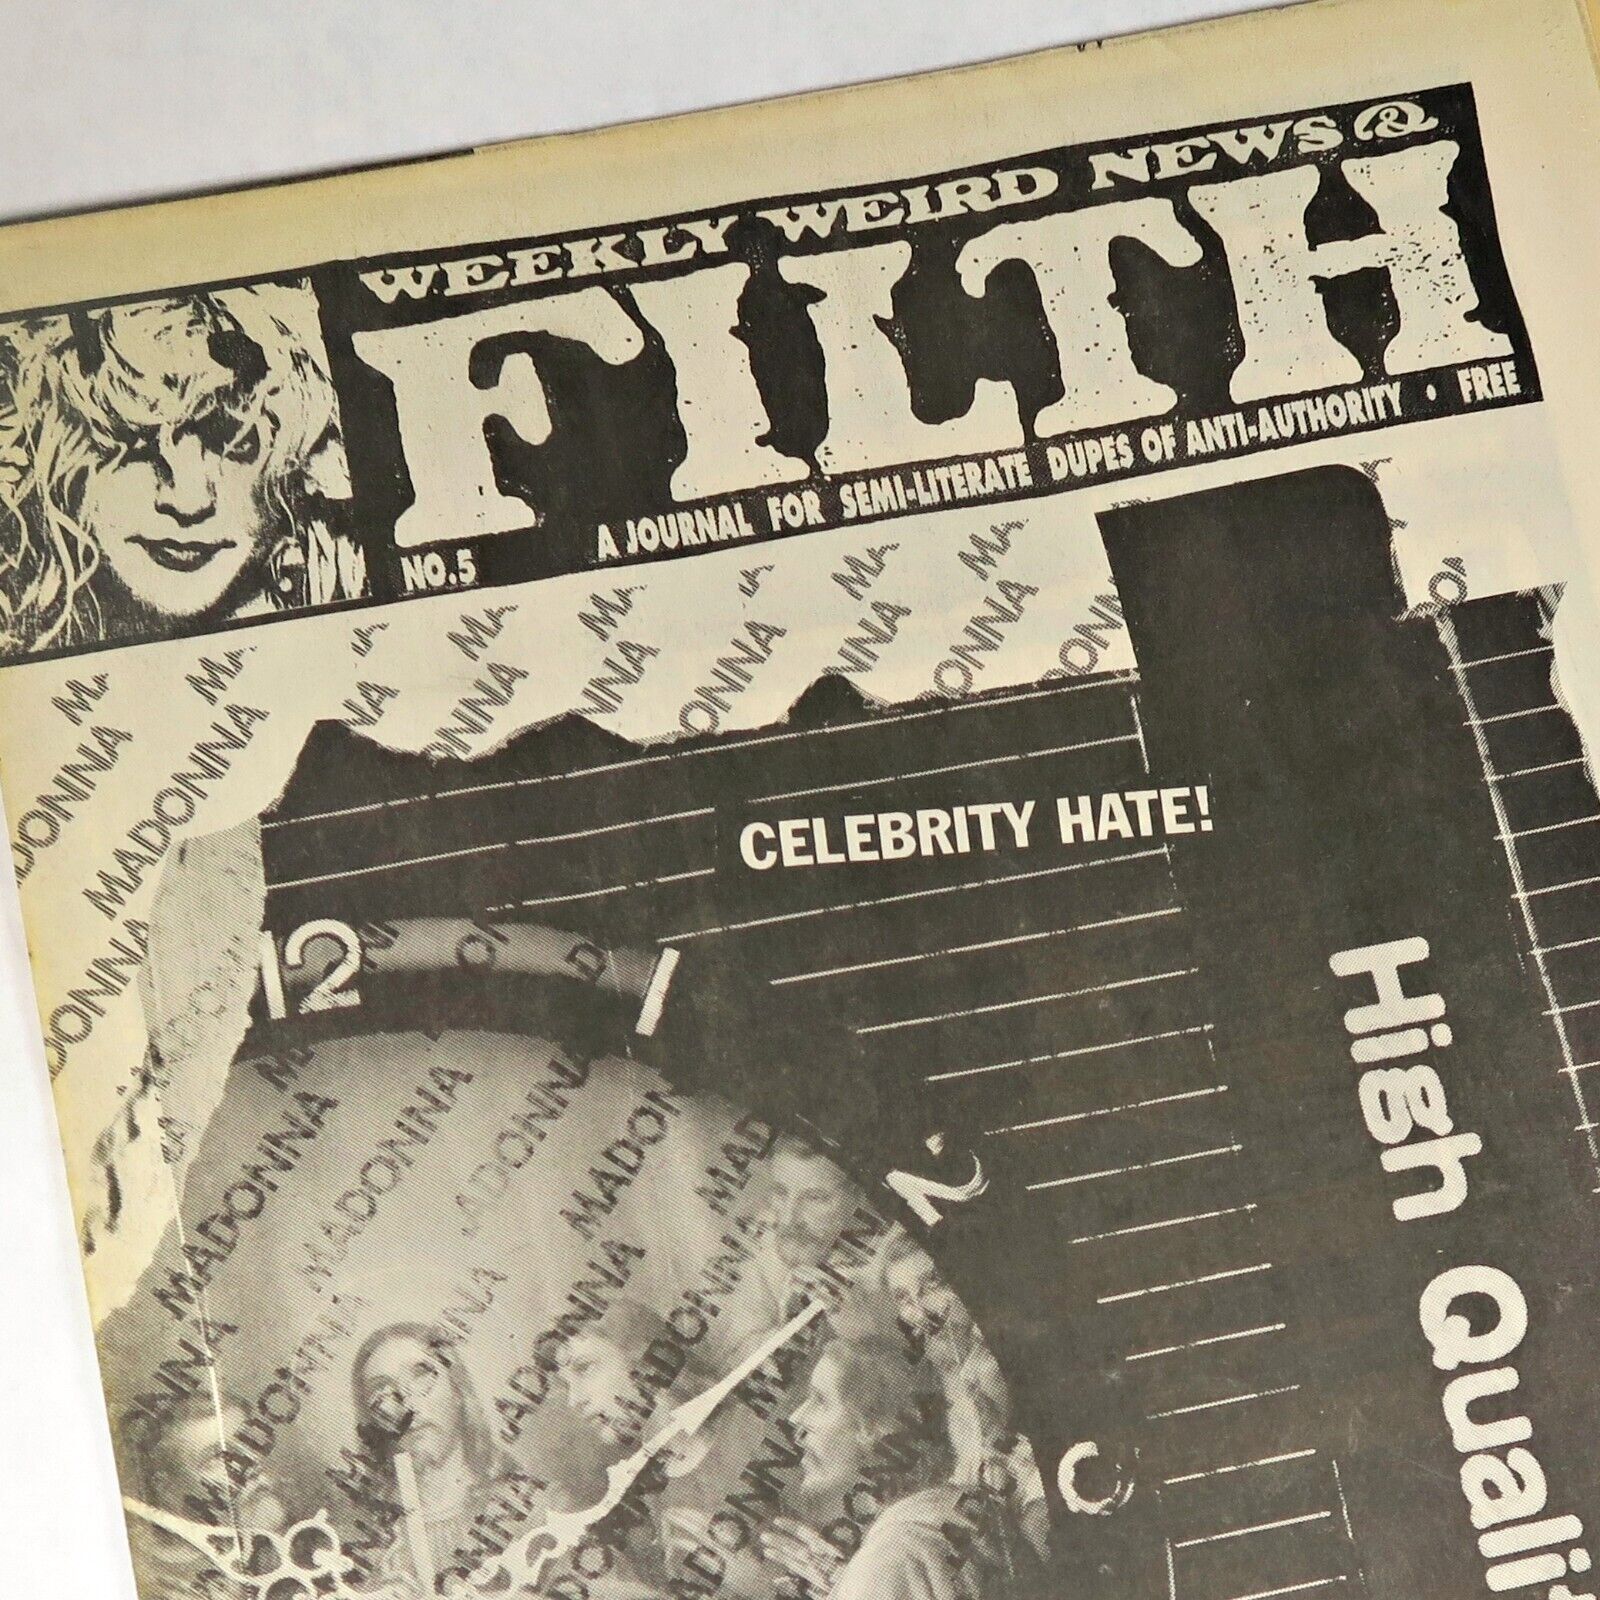 Weekly Weird News & Filth #5 1992 San Francisco Chuck Sperry Alt Newspaper Zine